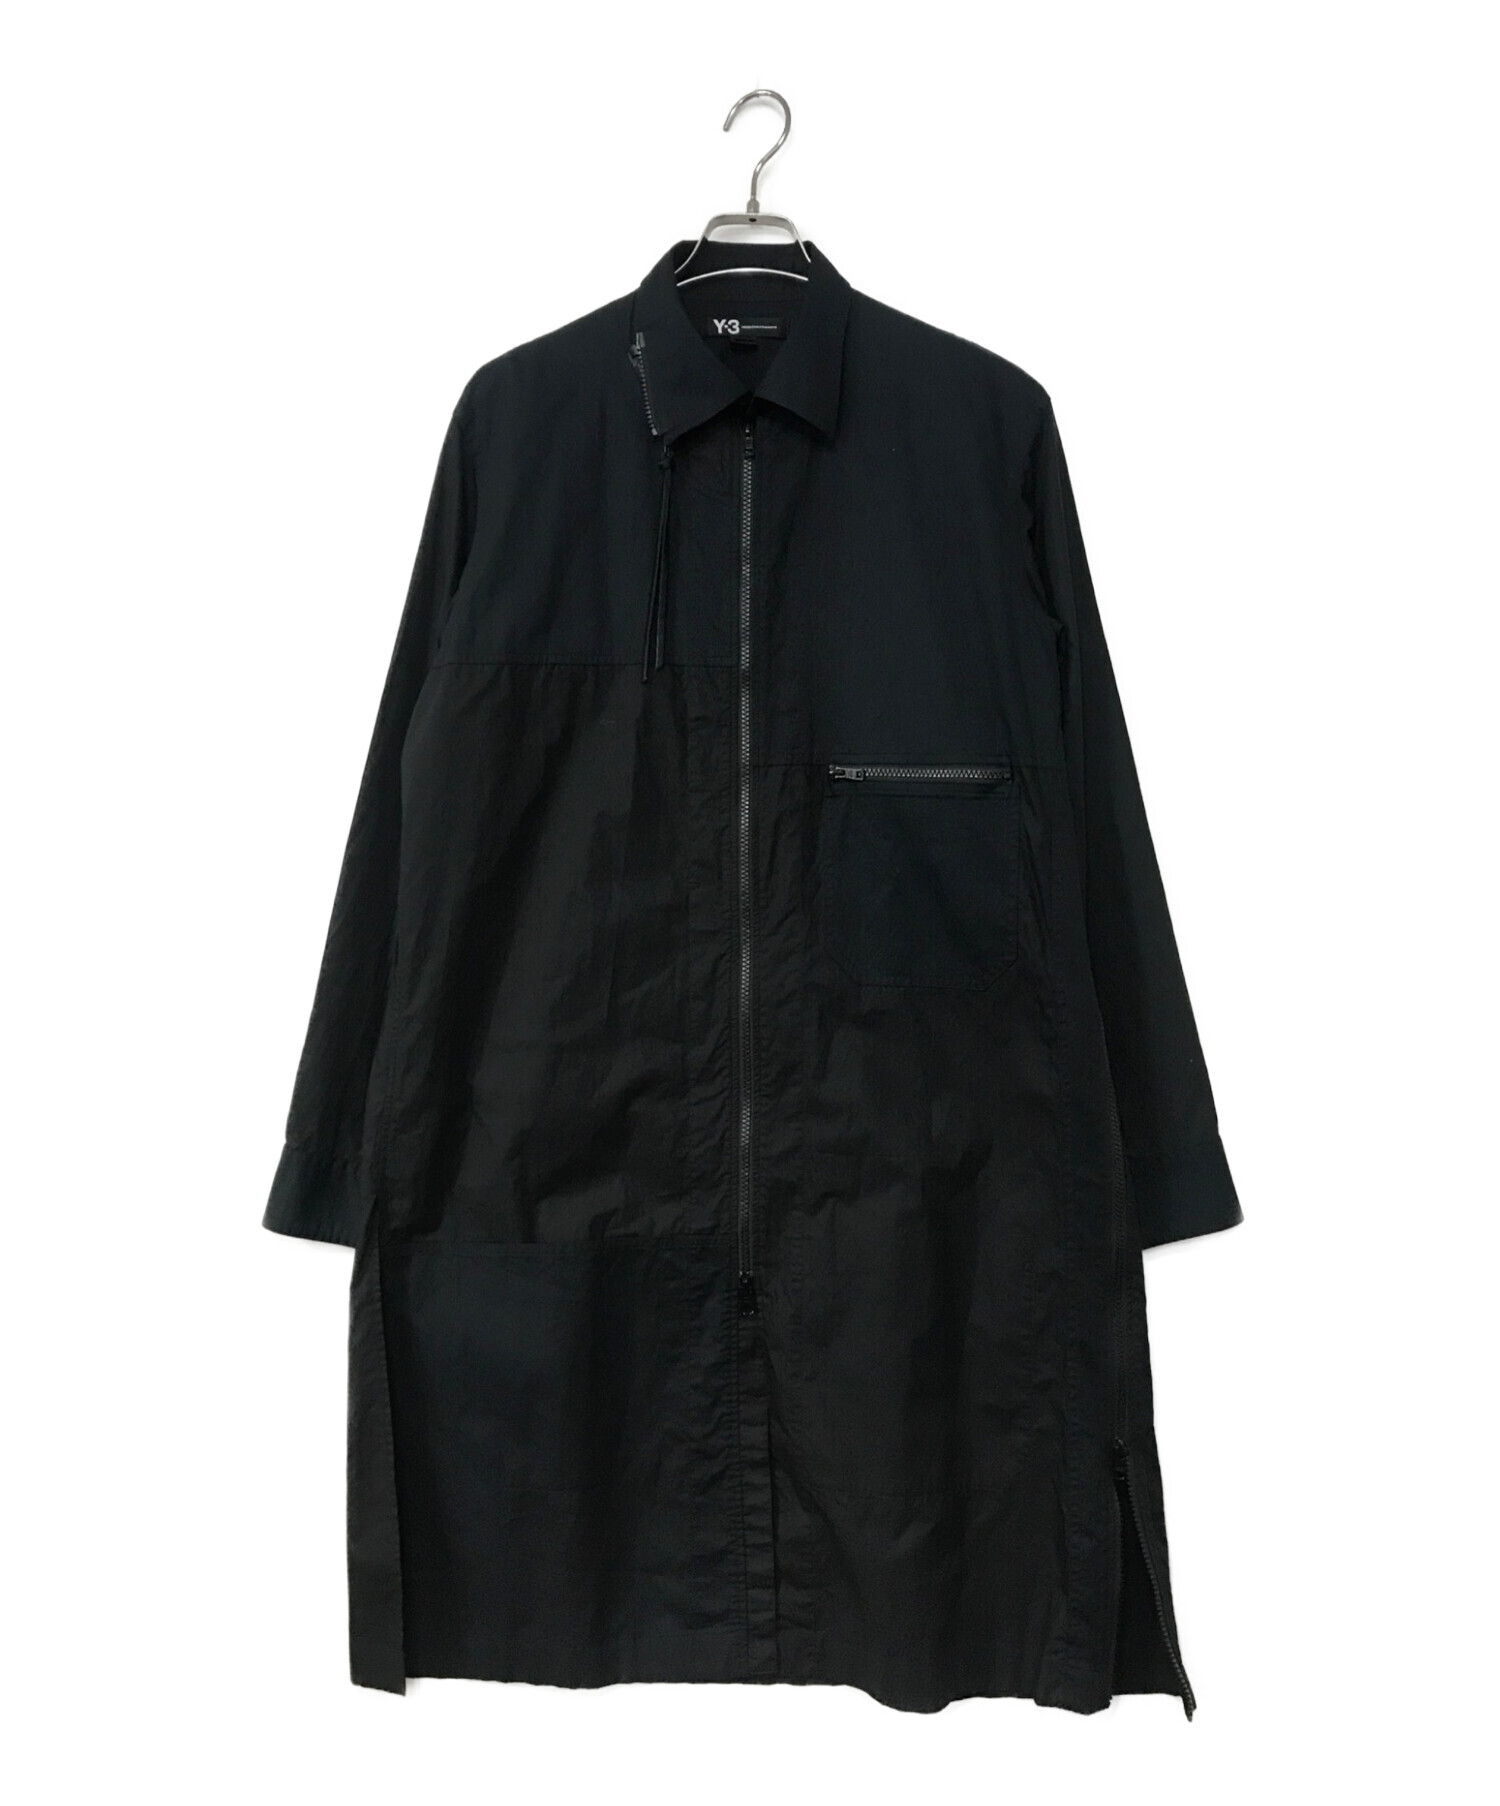 Y-3 (ワイスリー) ロングシャツ ブラック サイズ:L